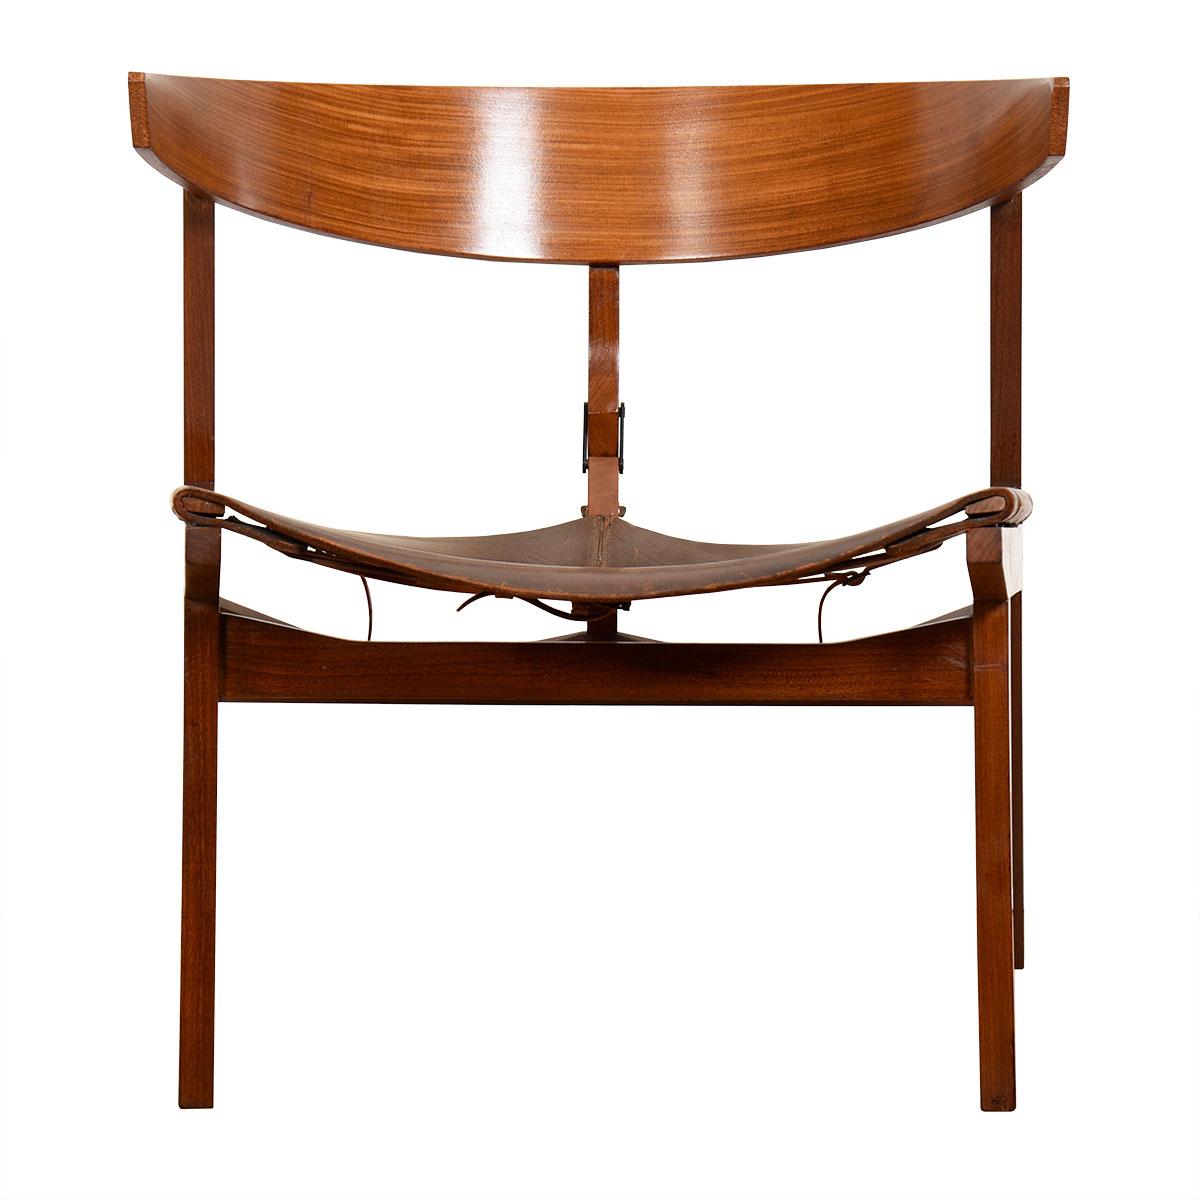 Chaise en bois sculpté et cuir marron vintage. Conçu par Ico Parisi, le designer expérimental moderniste du milieu du siècle dernier. La chaise longue s'inscrit dans la gamme des designs élégants pour lesquels le fabricant italien de meubles est